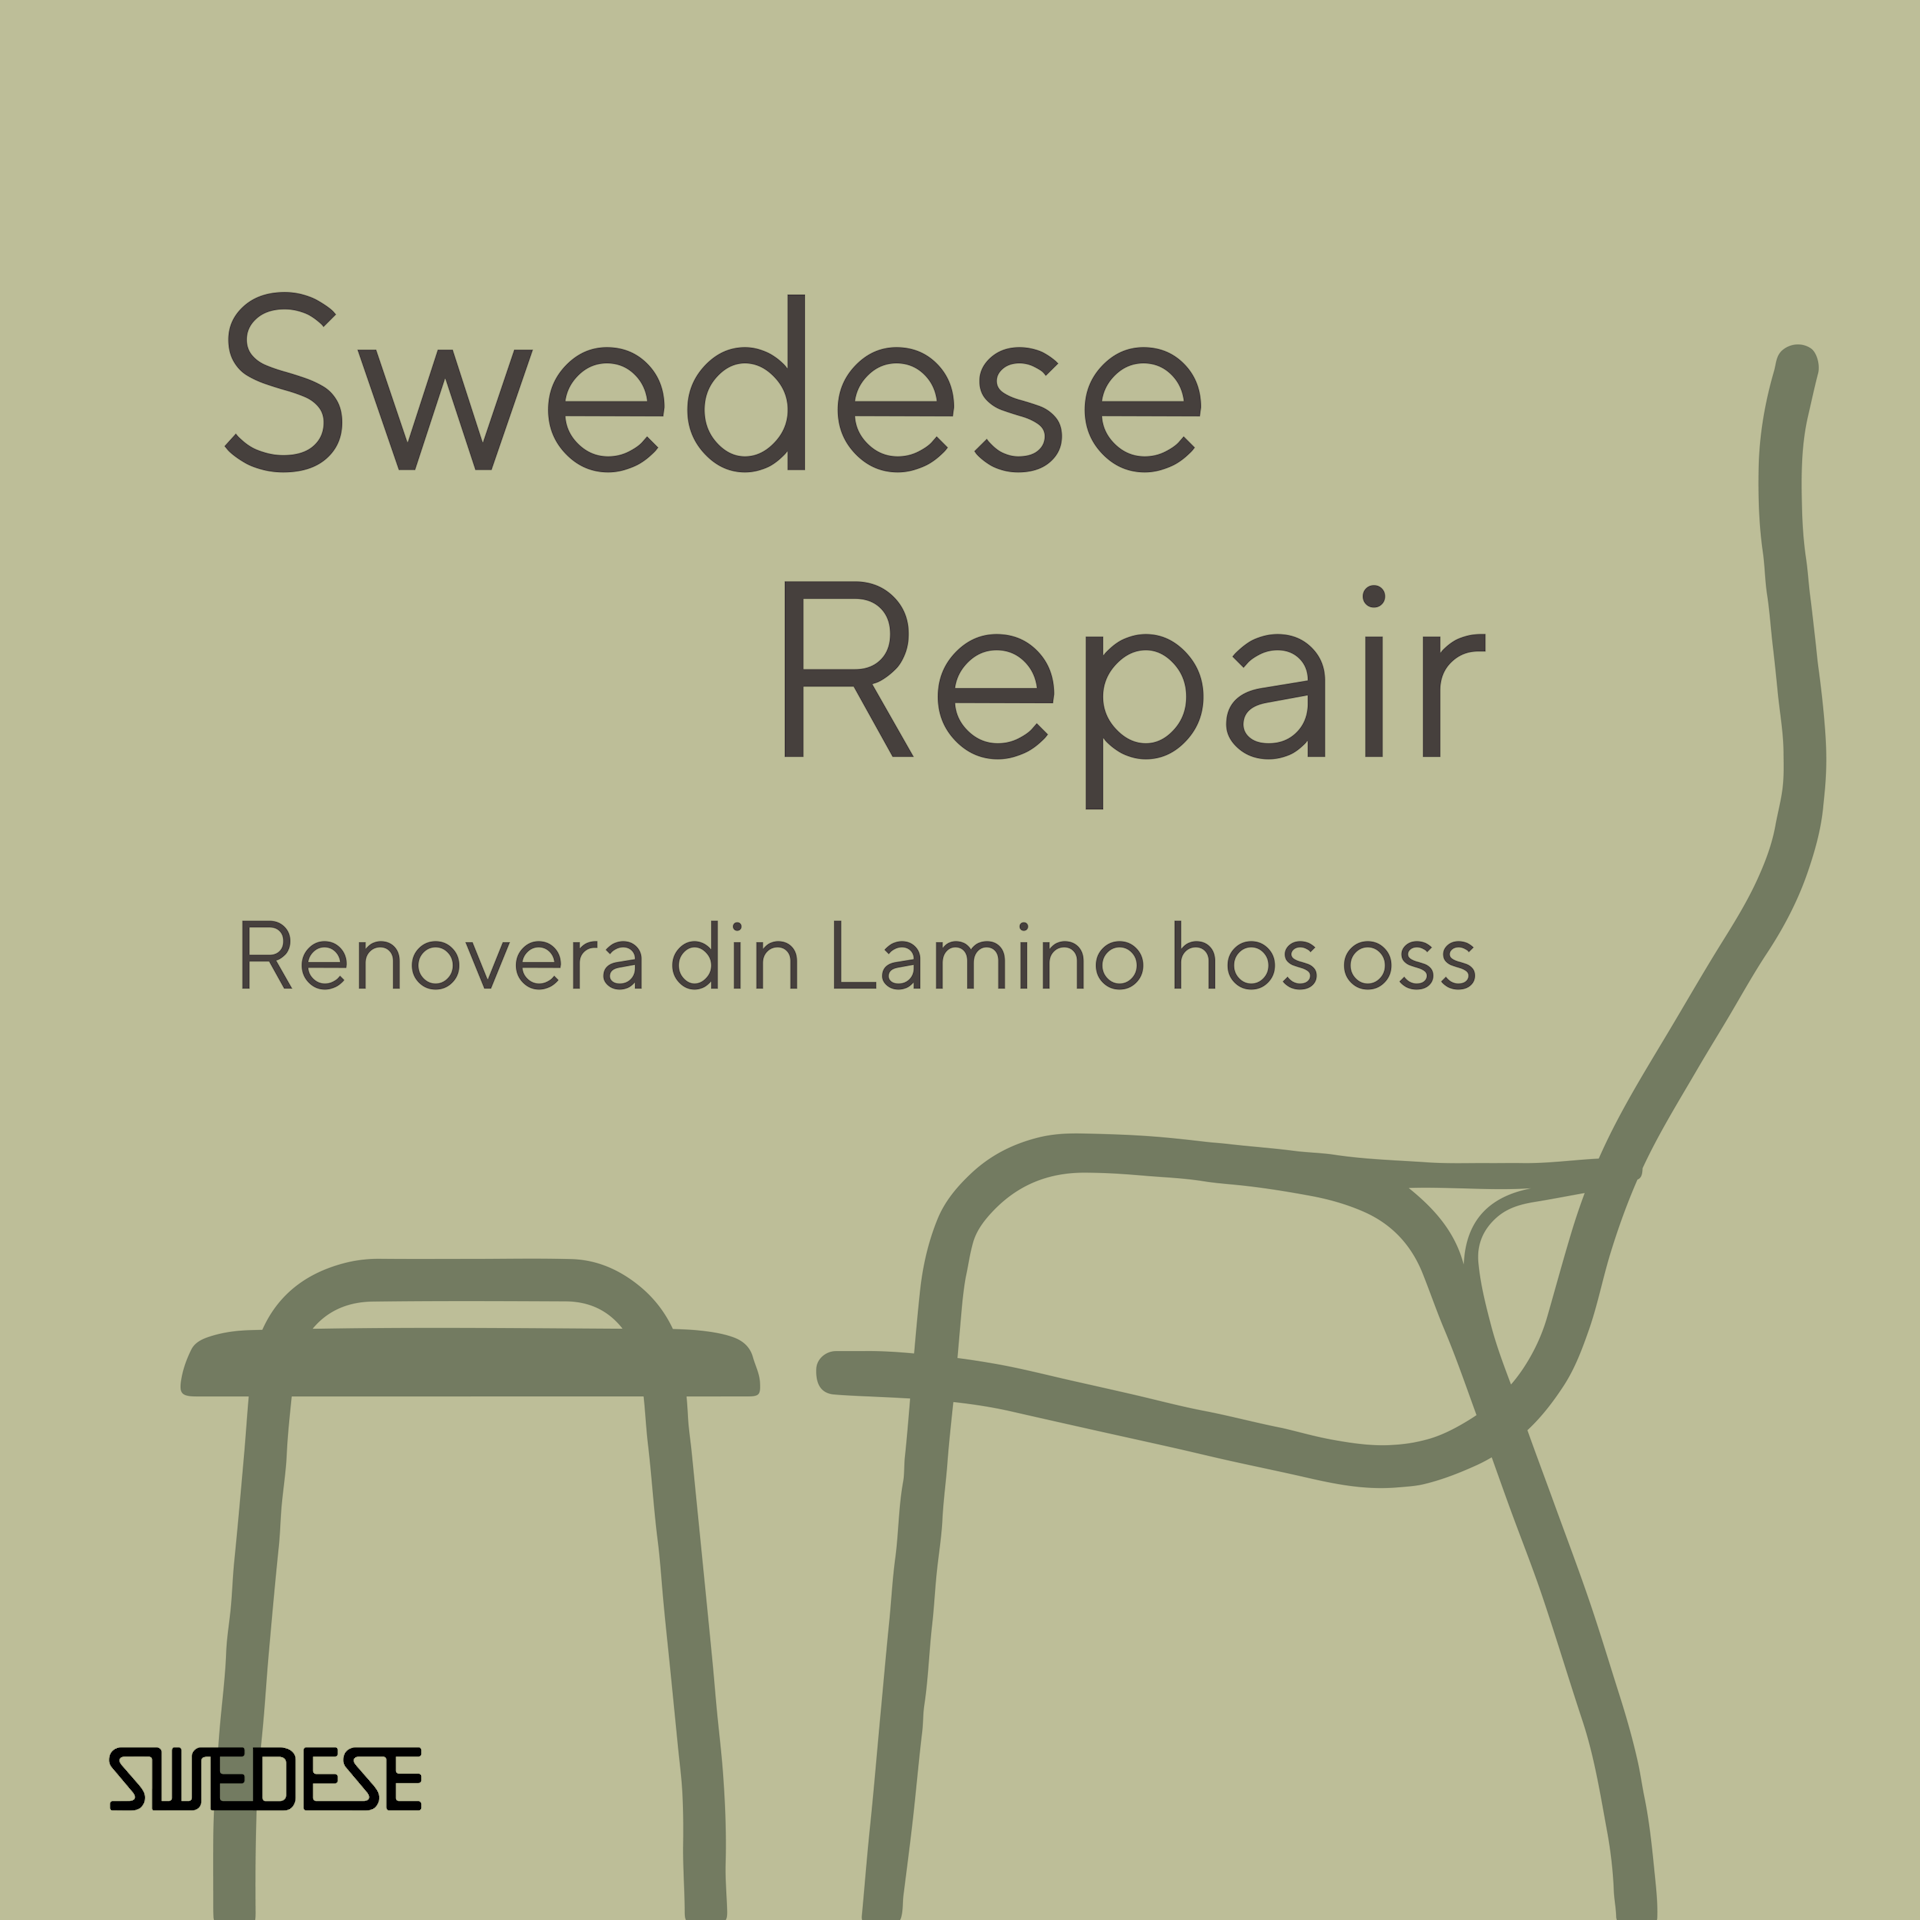 Swedese Repair